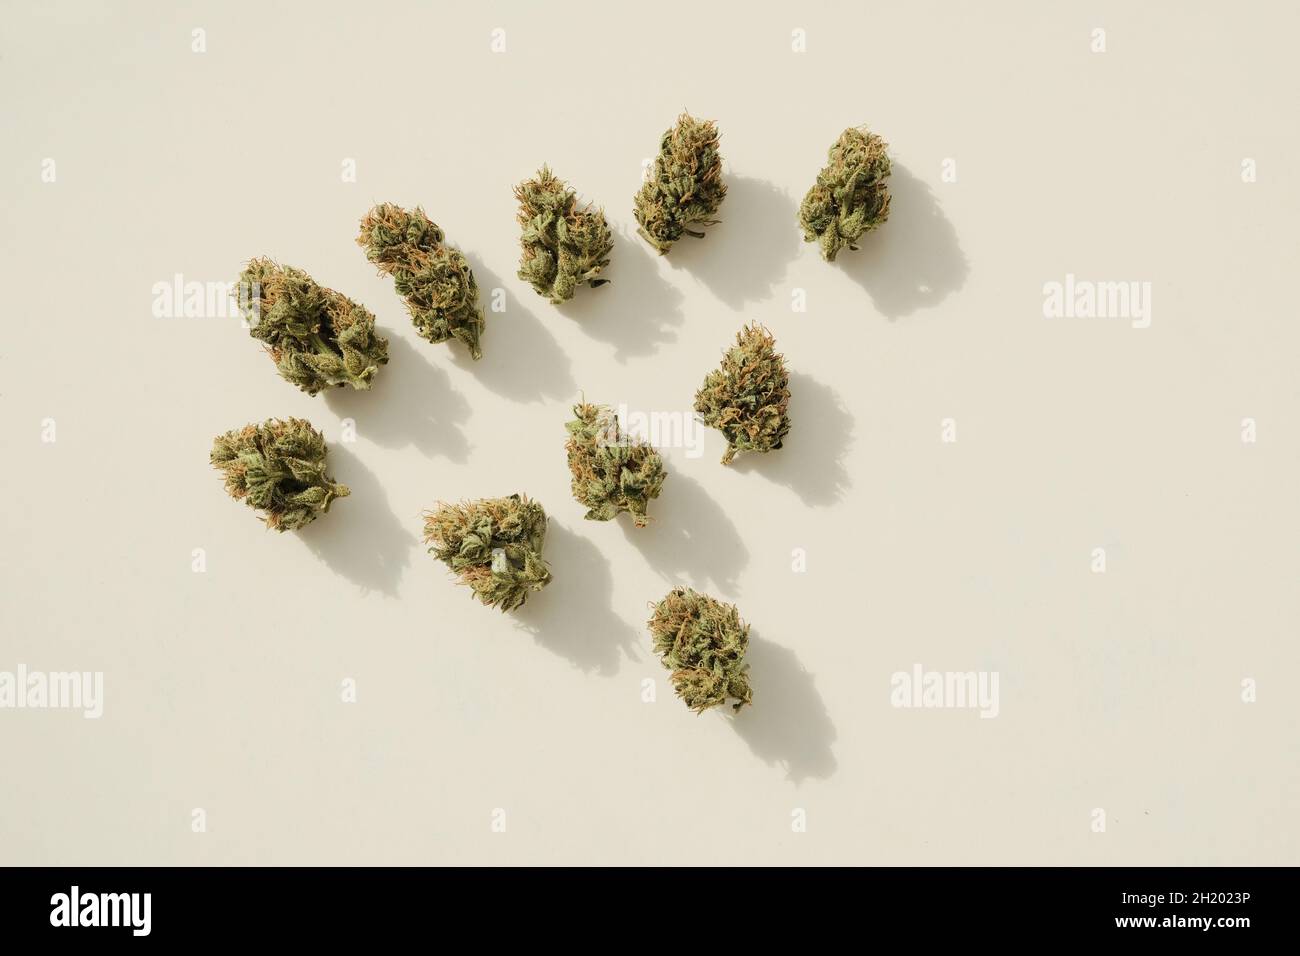 Marijuana germogli primo piano. Cannabis CBD medicinale, fioritura secca su sfondo avorio. Attività ricreative alle erbacce, vista dall'alto, piatto. Foto Stock